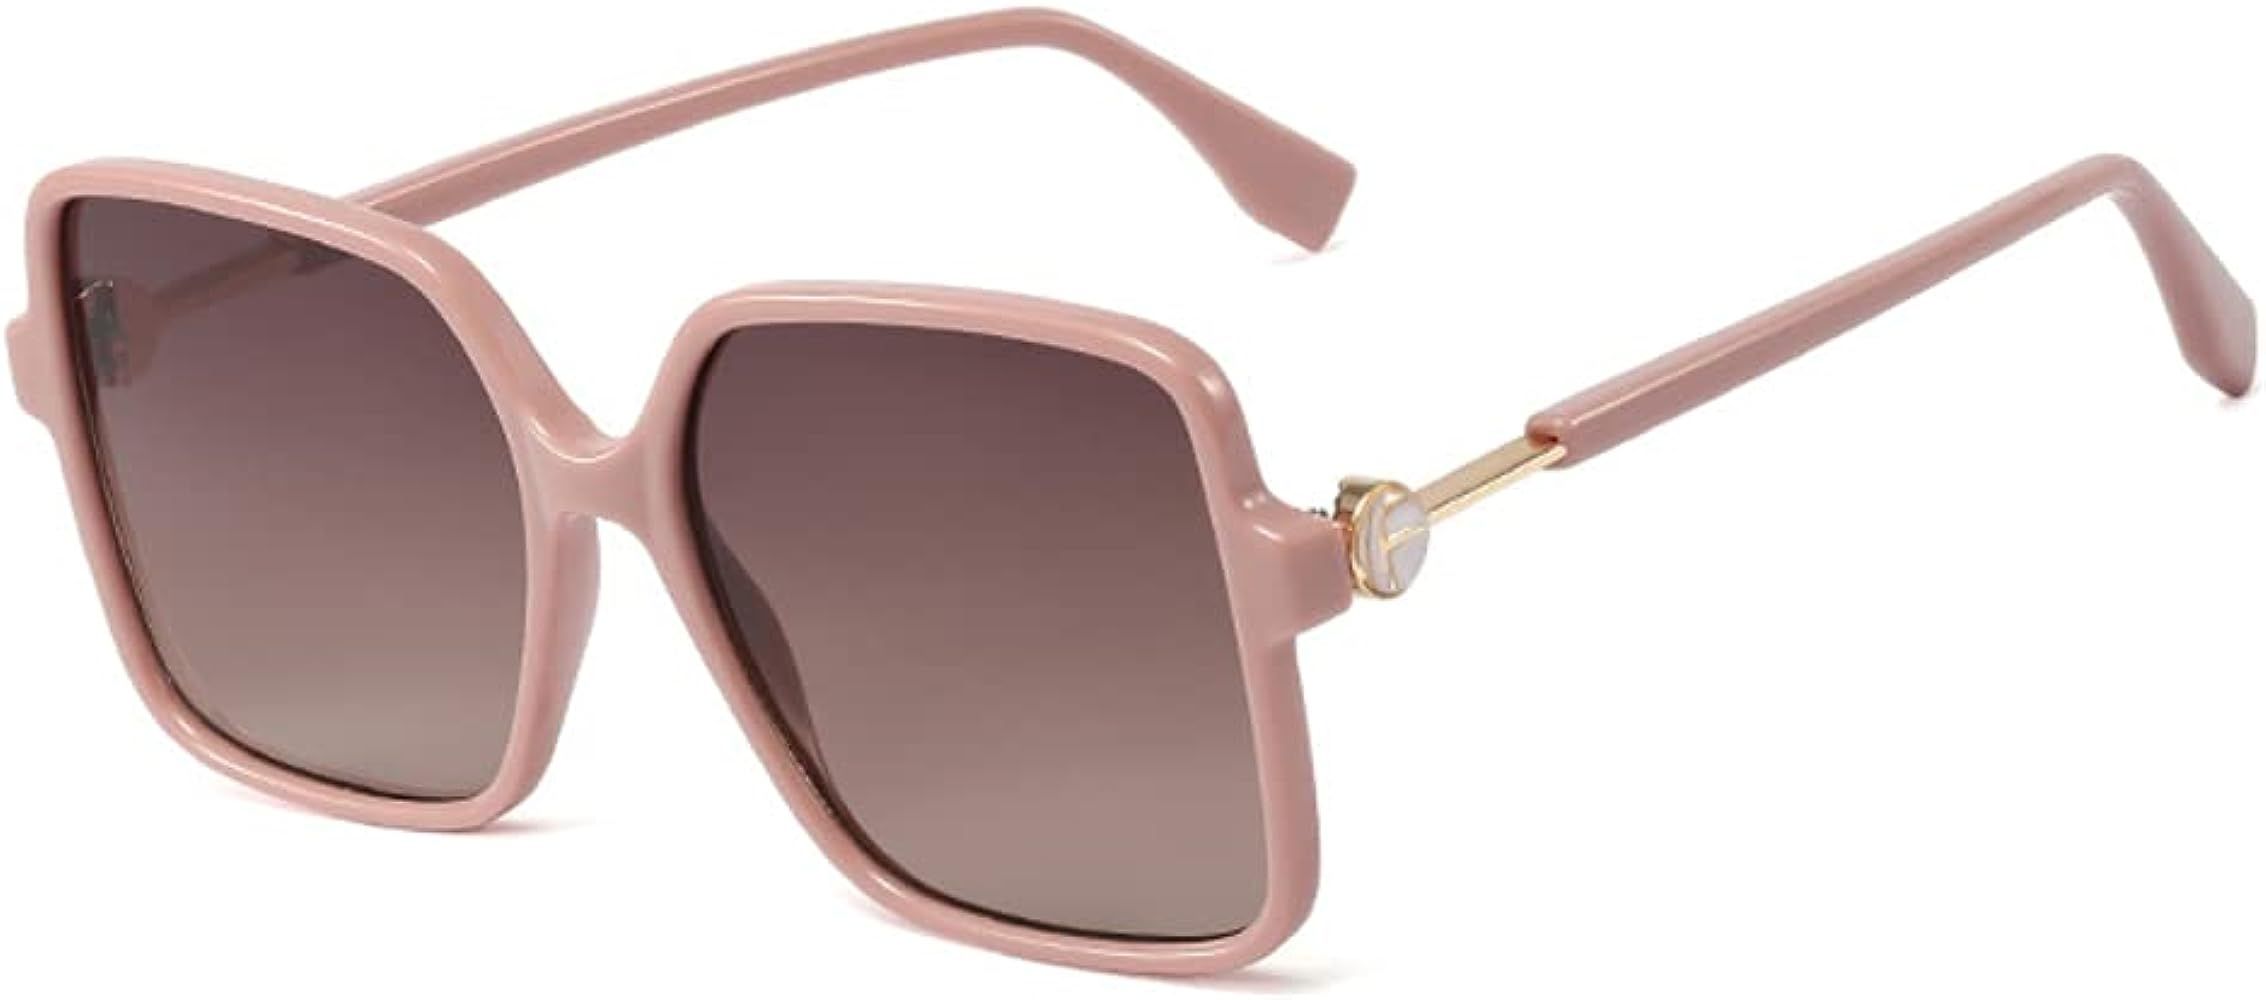 Retro Inspired Square Oversized Sunglasses Women Ultralight Frame Tinted Lenses | Amazon (US)